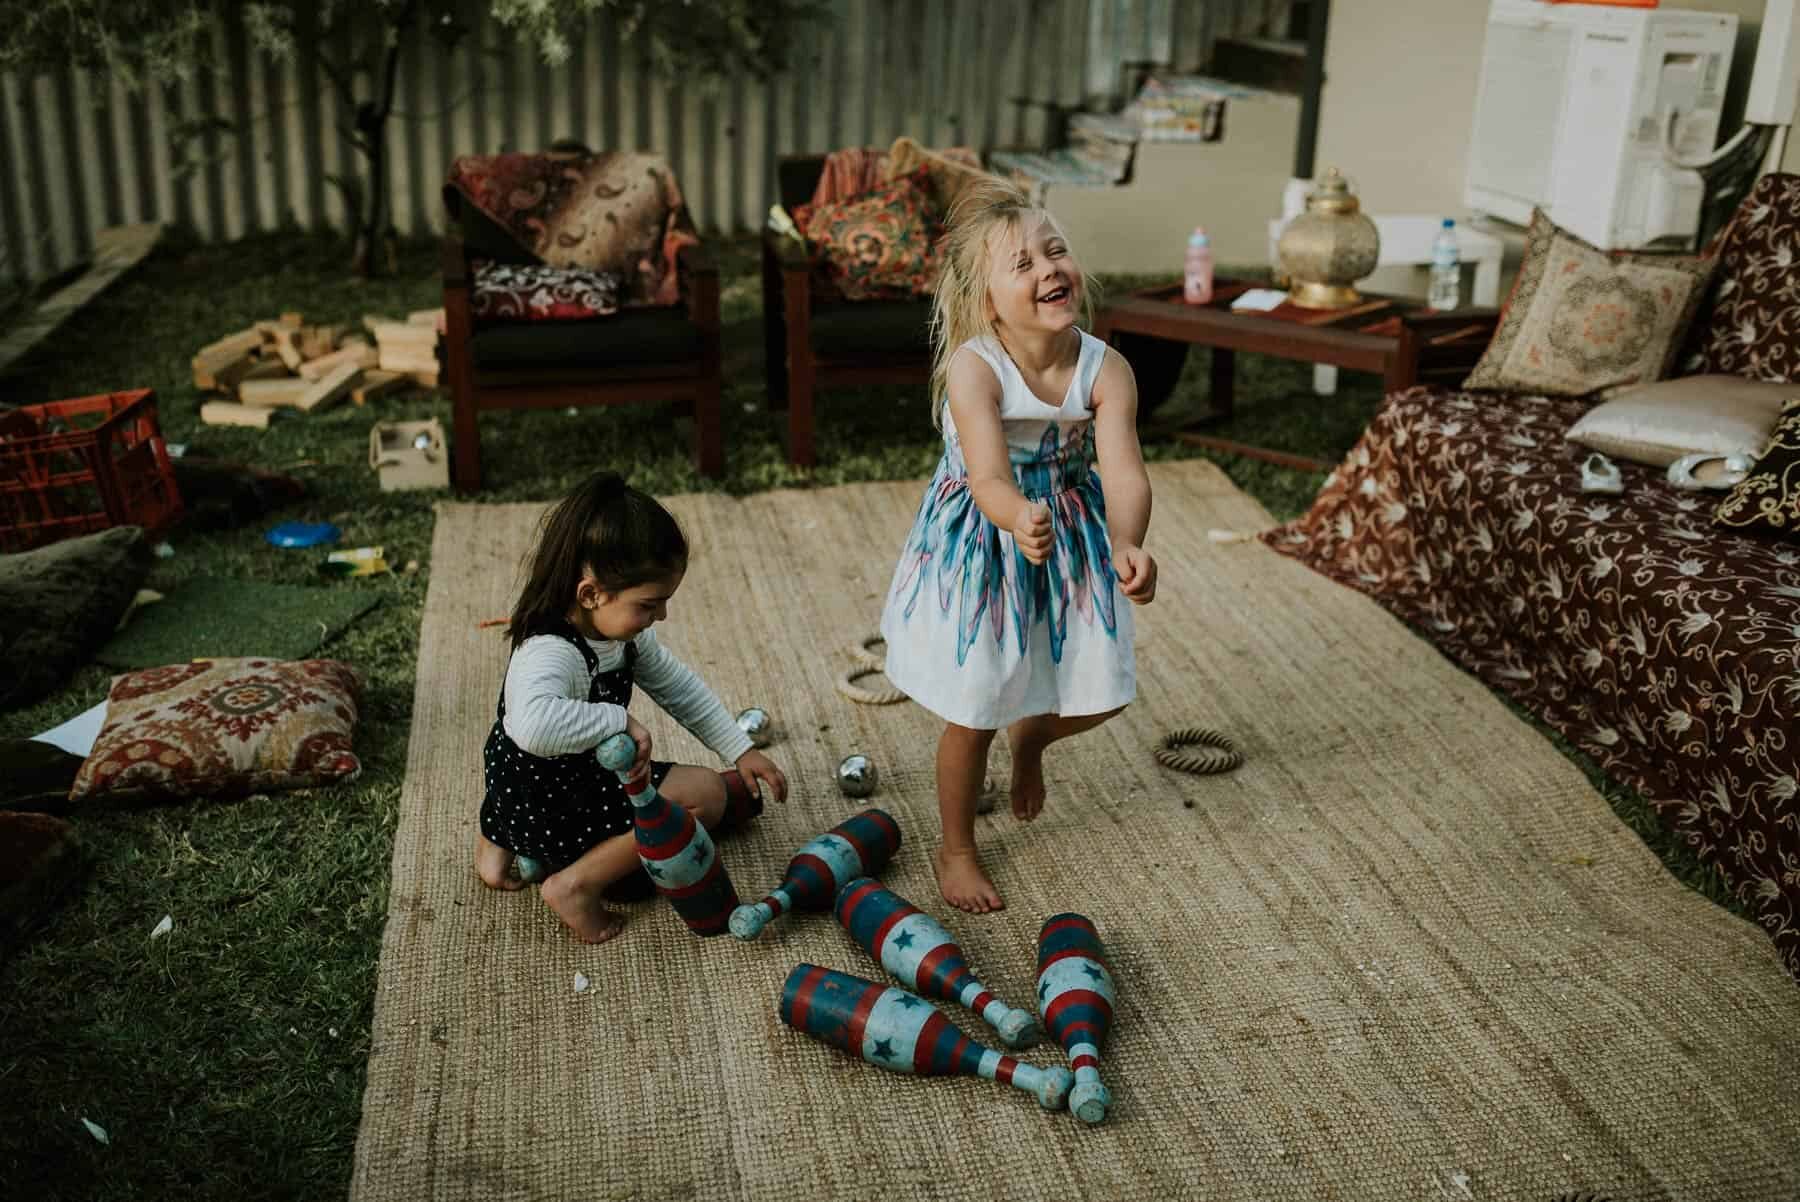 kid-friendly backyard wedding / photography by Liz Jorquera